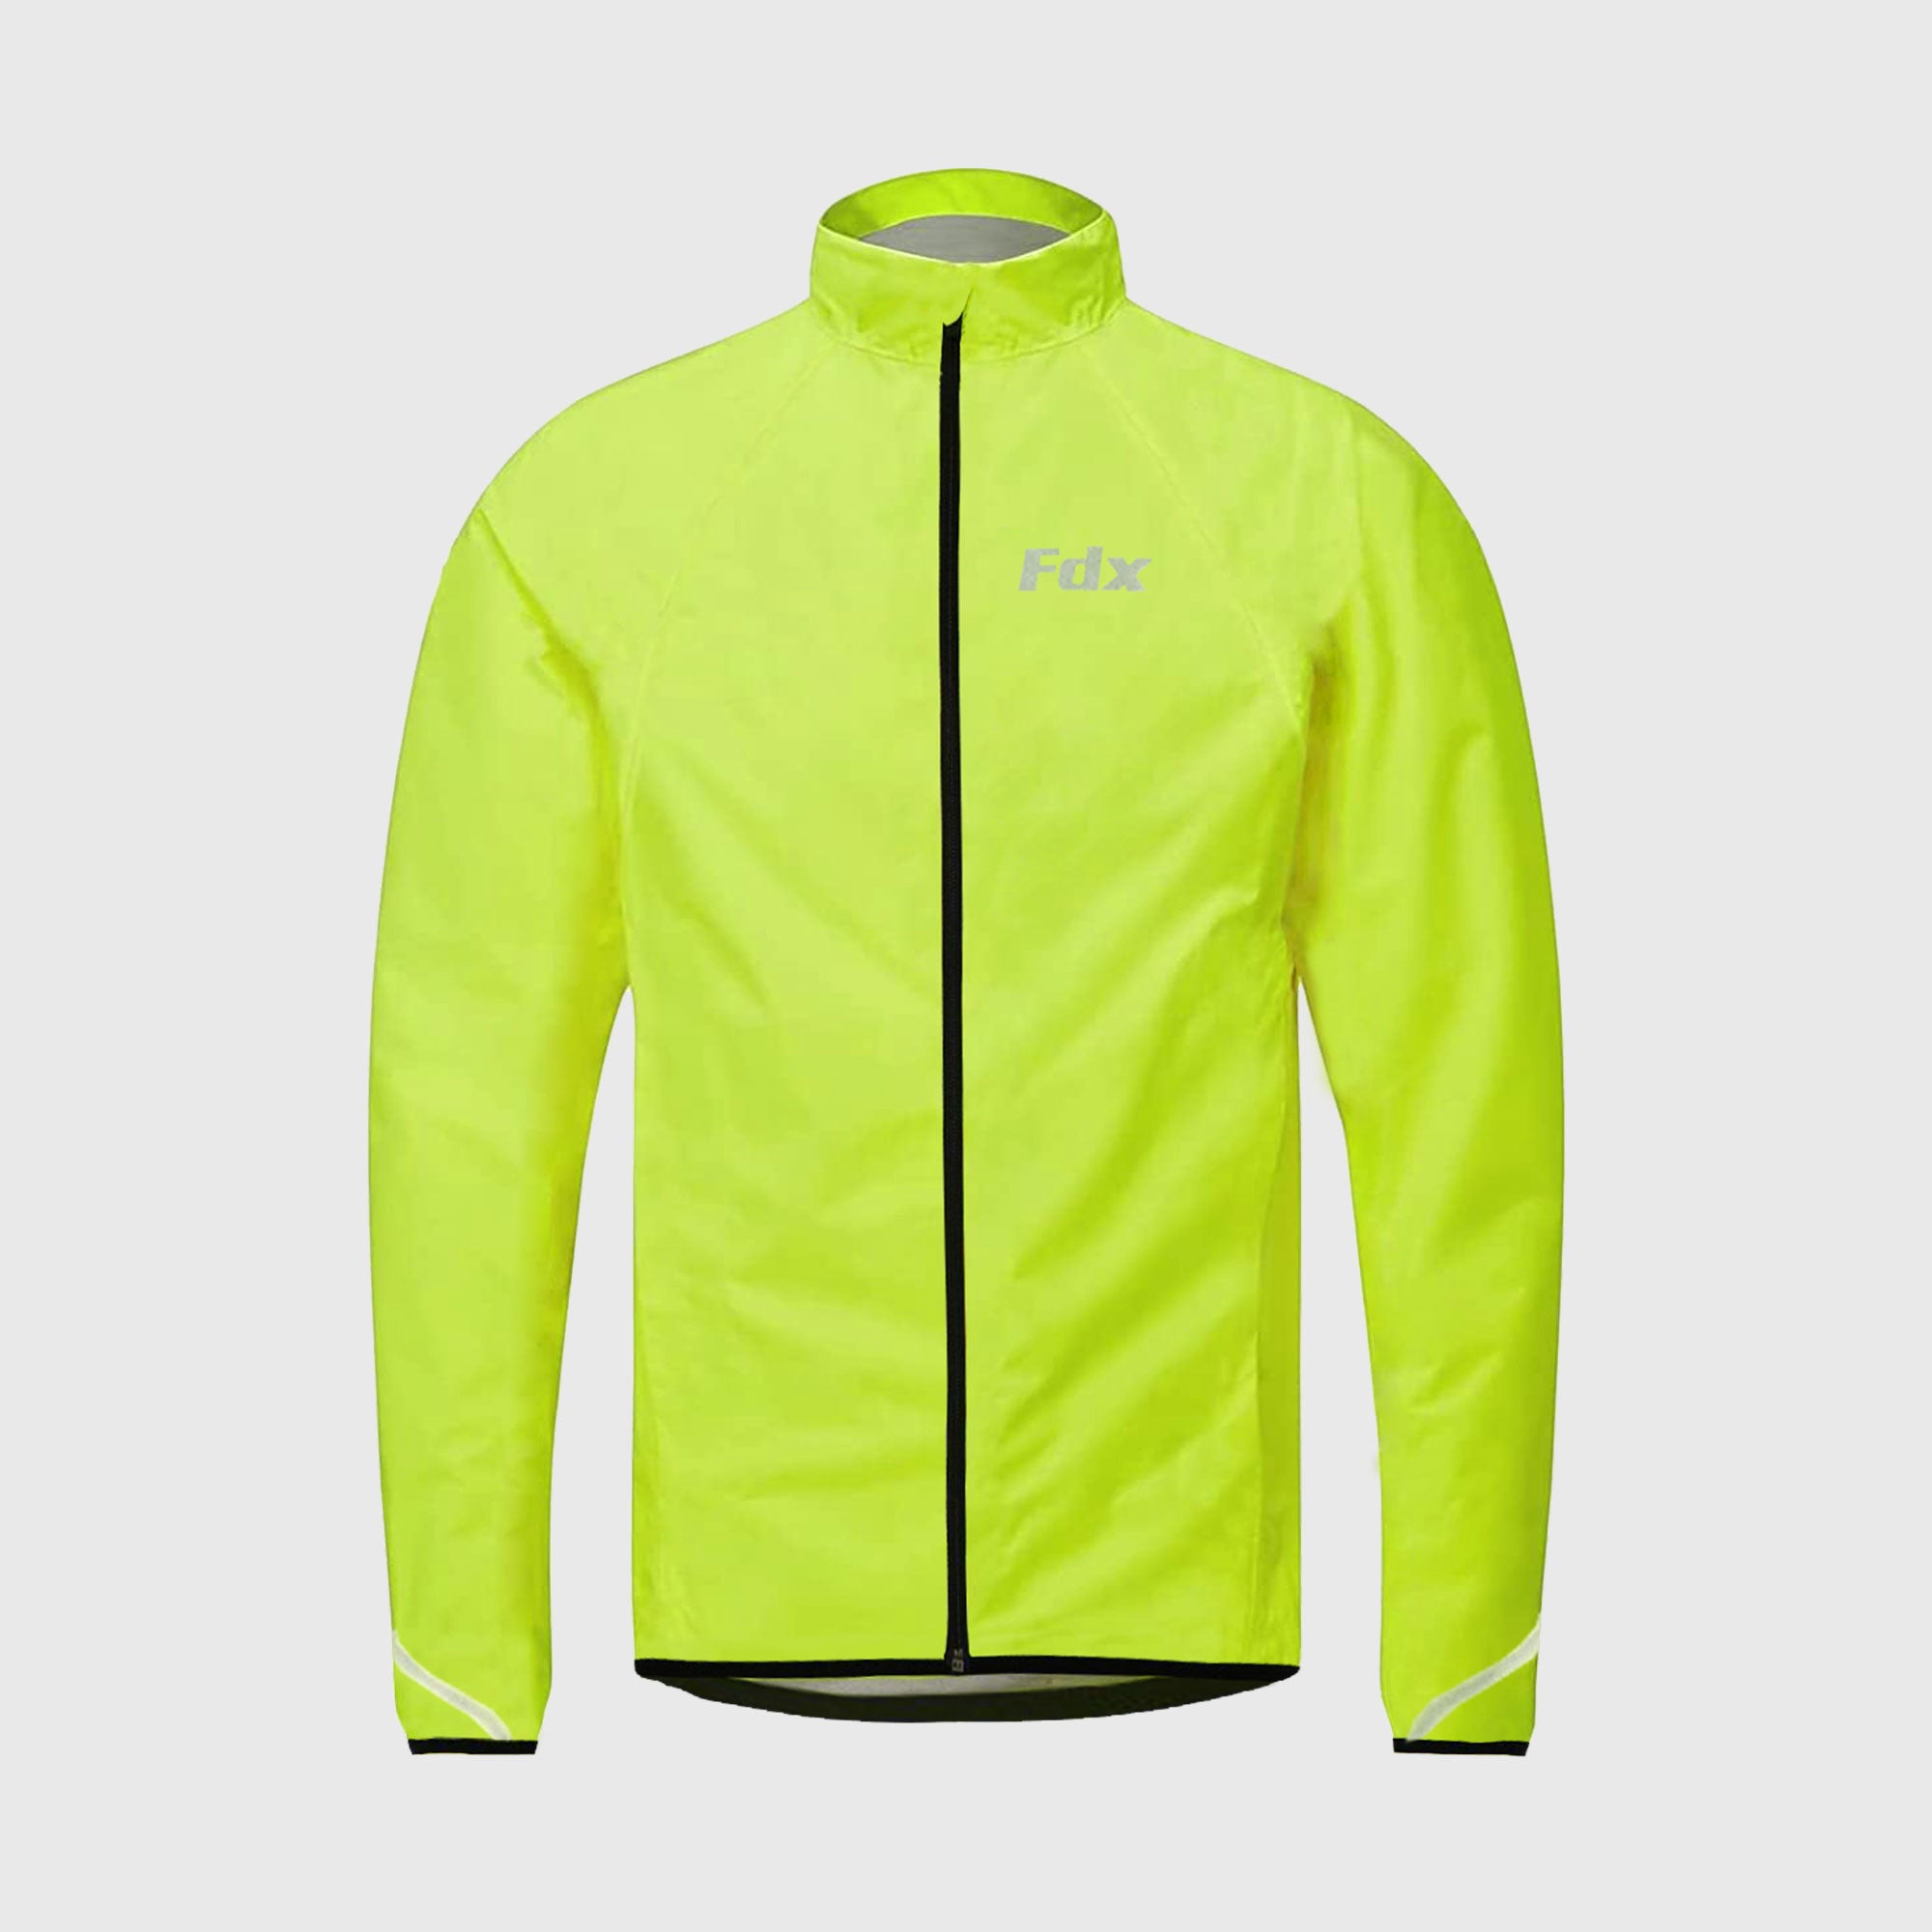 Fdx J20 Yellow Women's Windproof & Waterproof Cycling Jacket